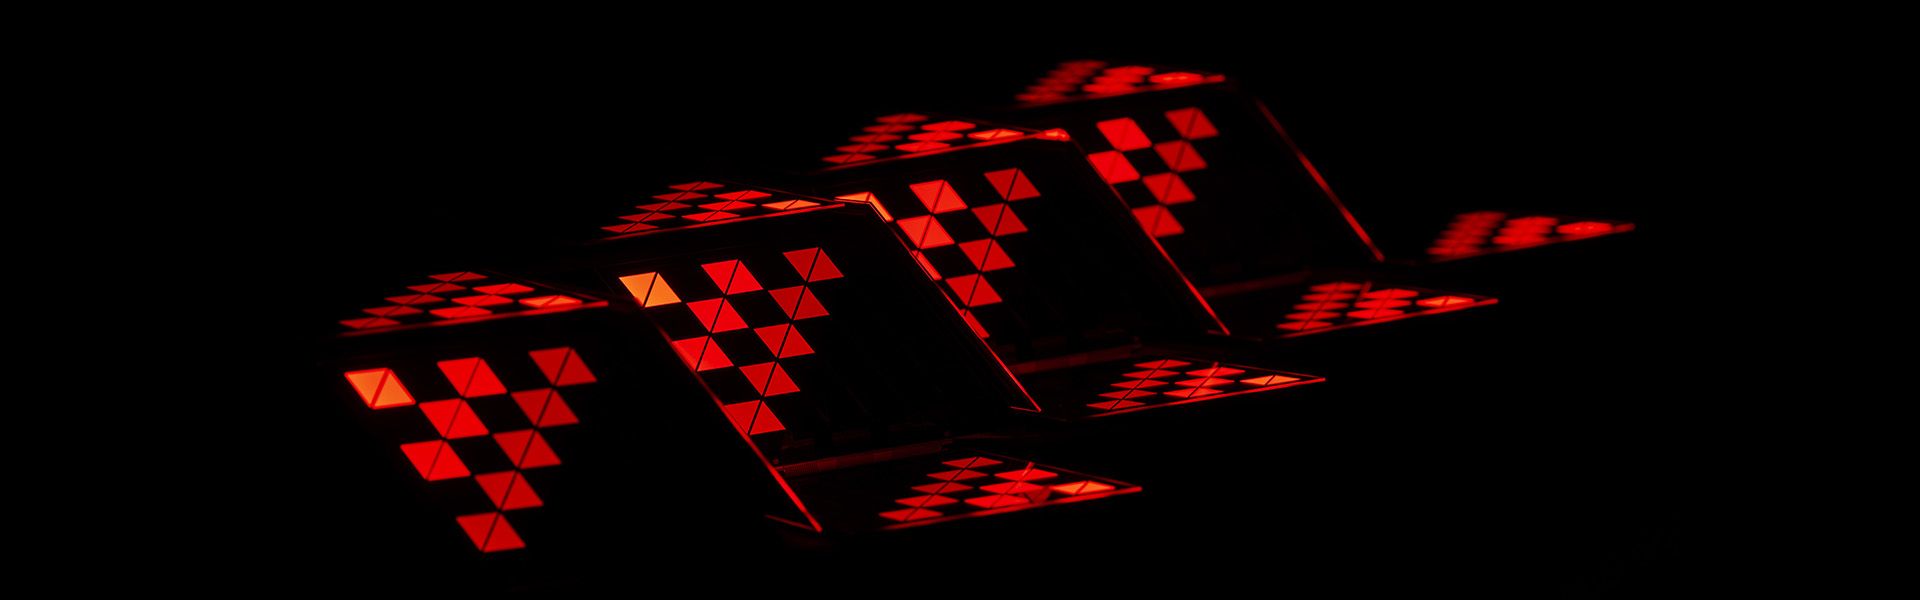 Rotes Design vor schwarzem Hintergrund